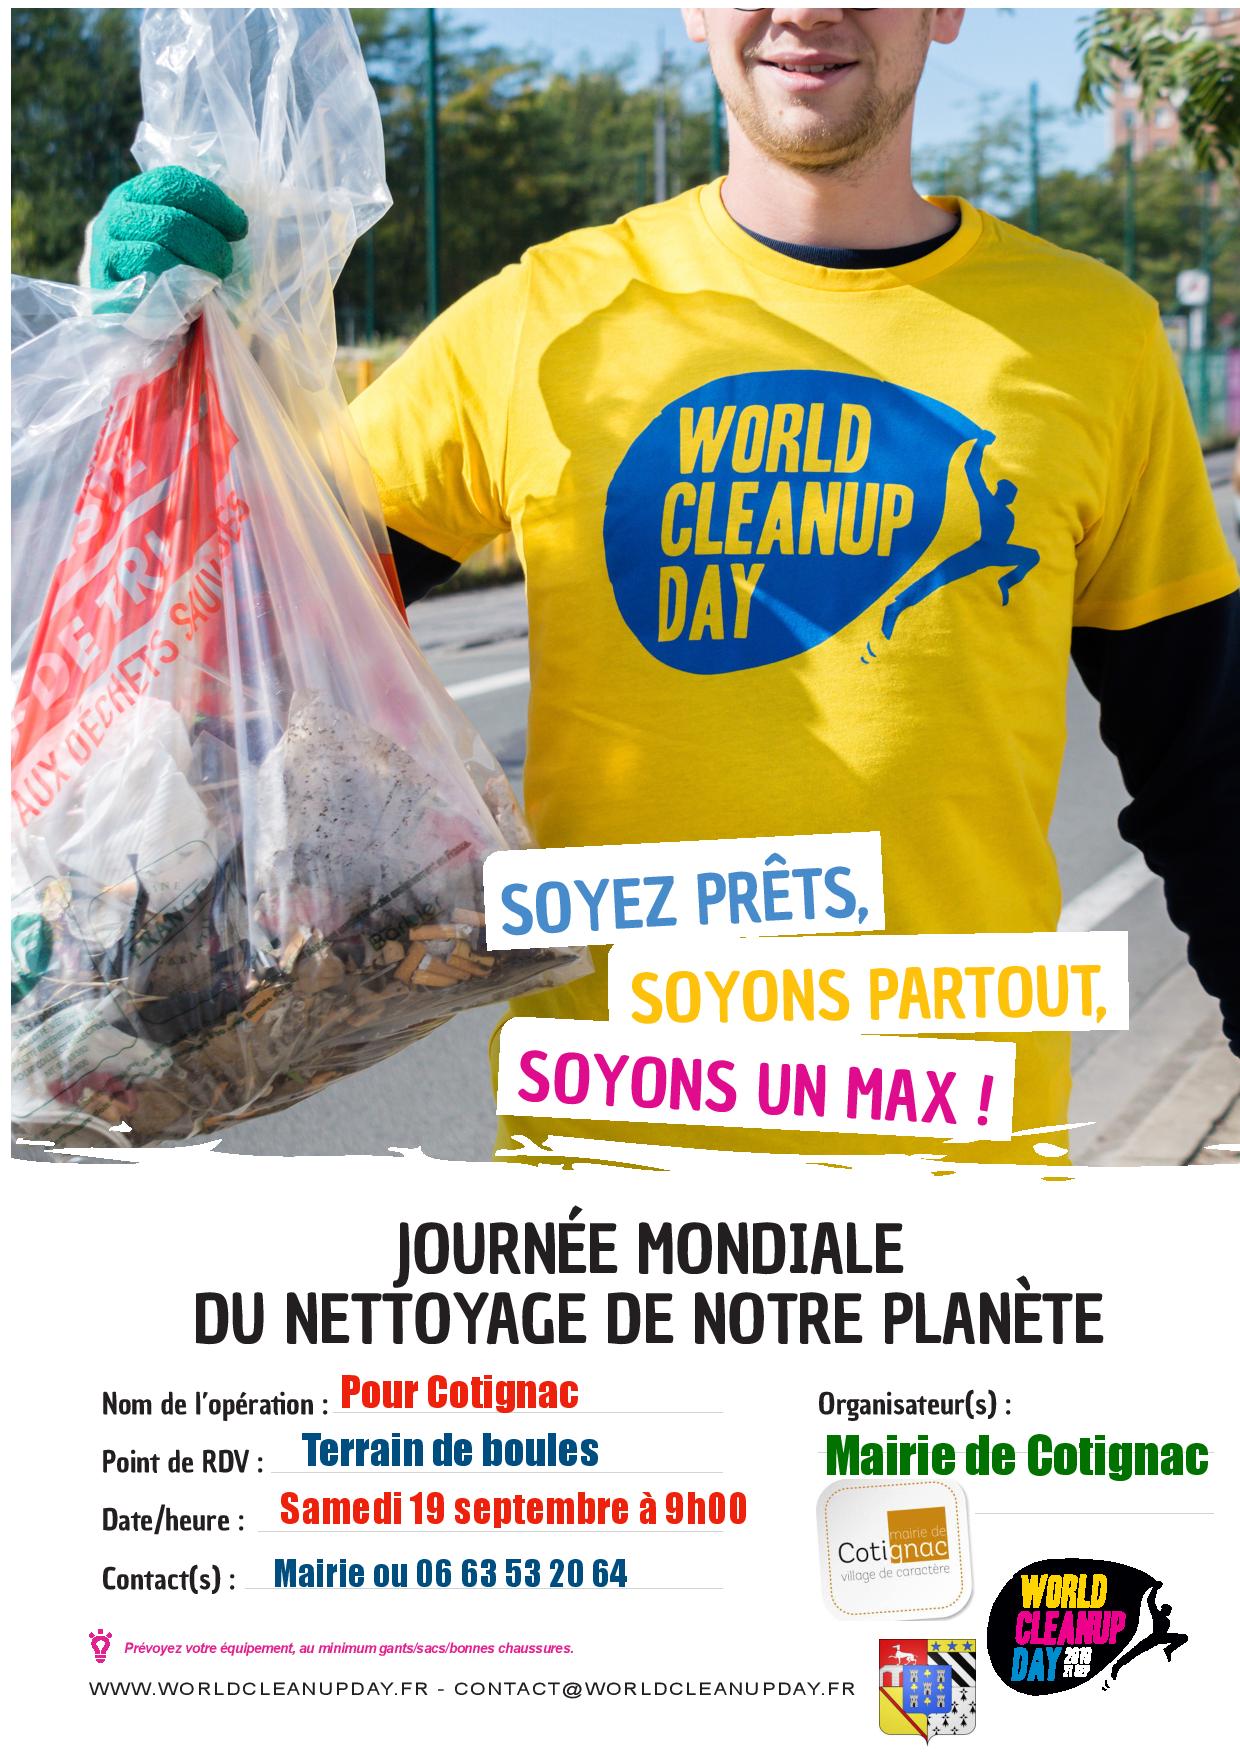 Journée mondiale du nettoyage de notre planète :